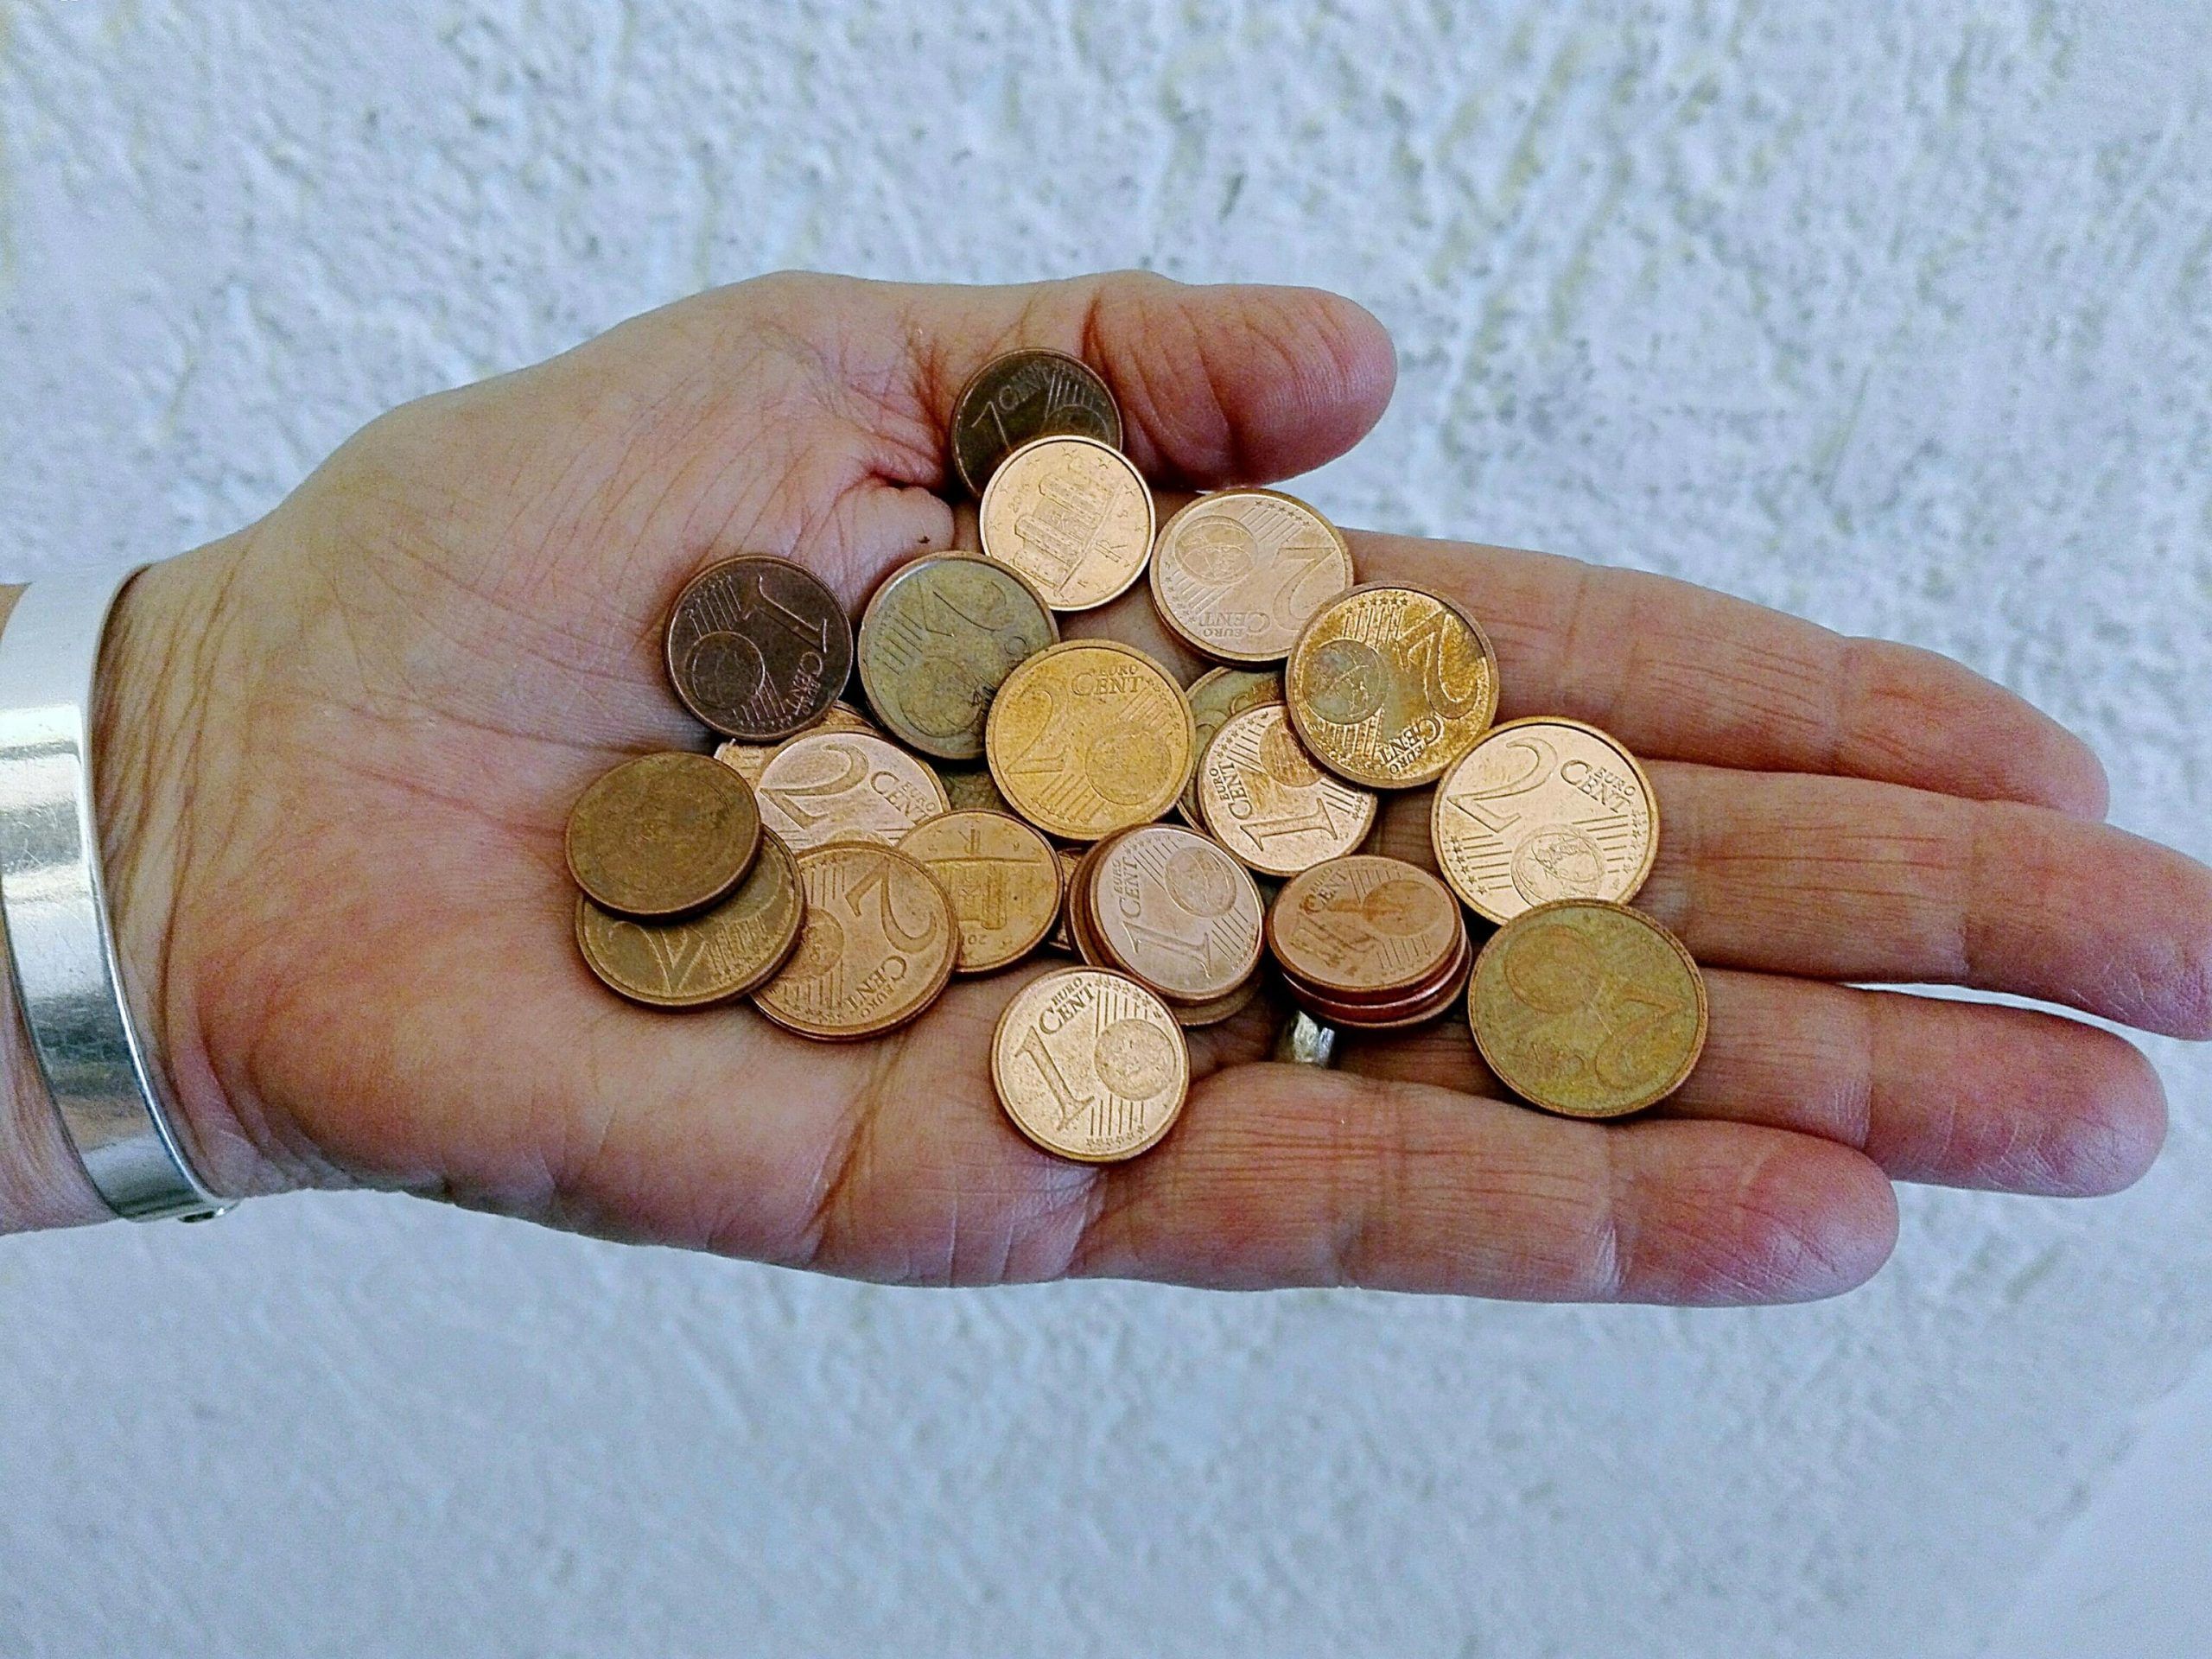 Monete da 1 e 2 centesimi: addio dal 2018 se passa l’emendamento Pd